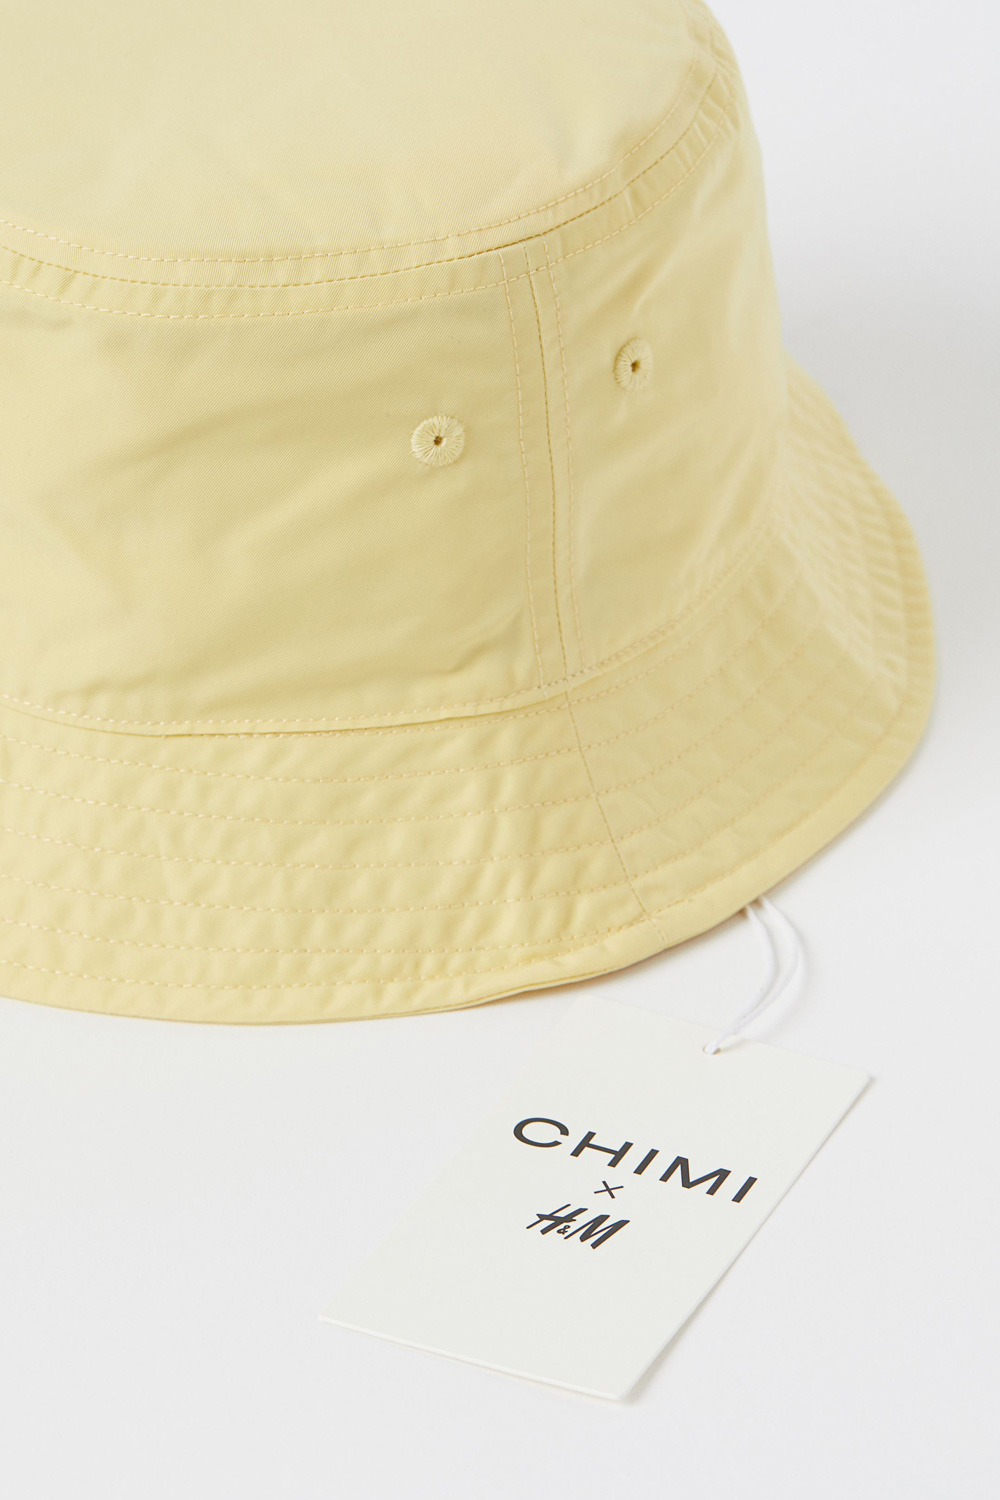 H&M CHIMI kapa ljeto 2020